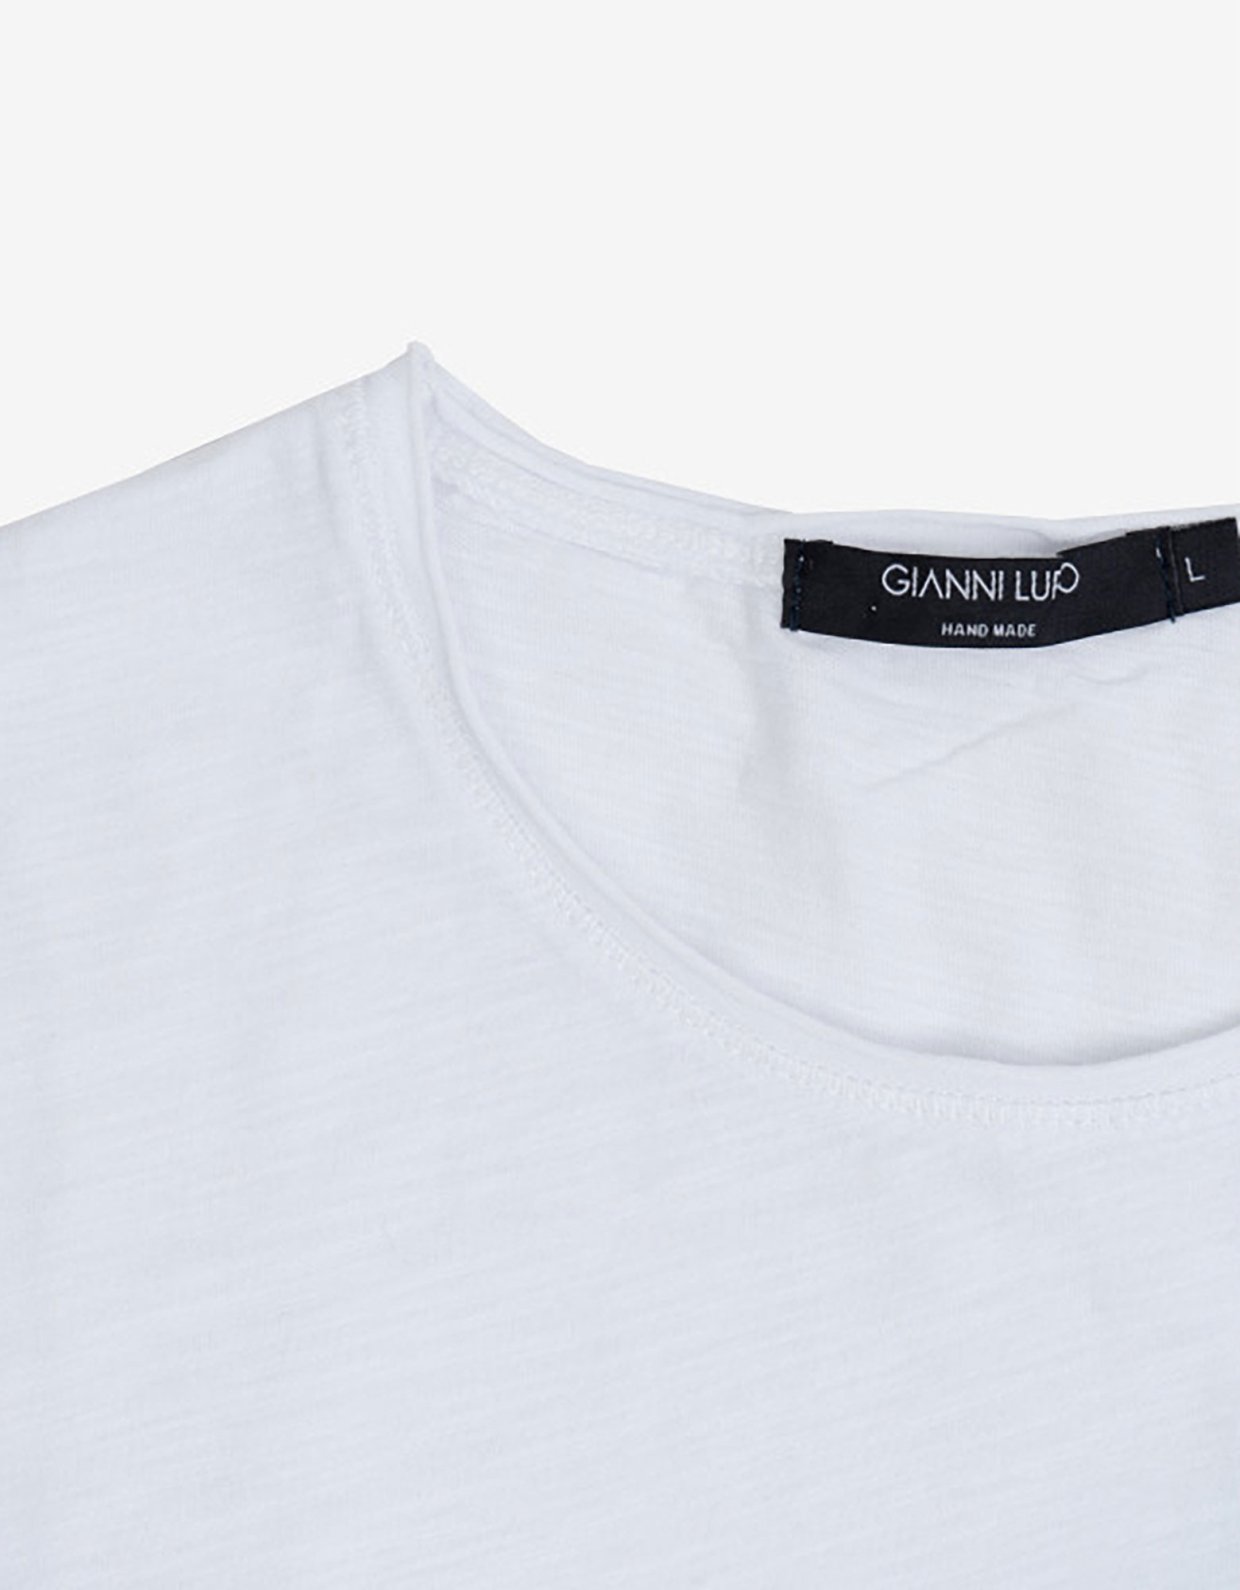 Gianni Lupo T-shirt white